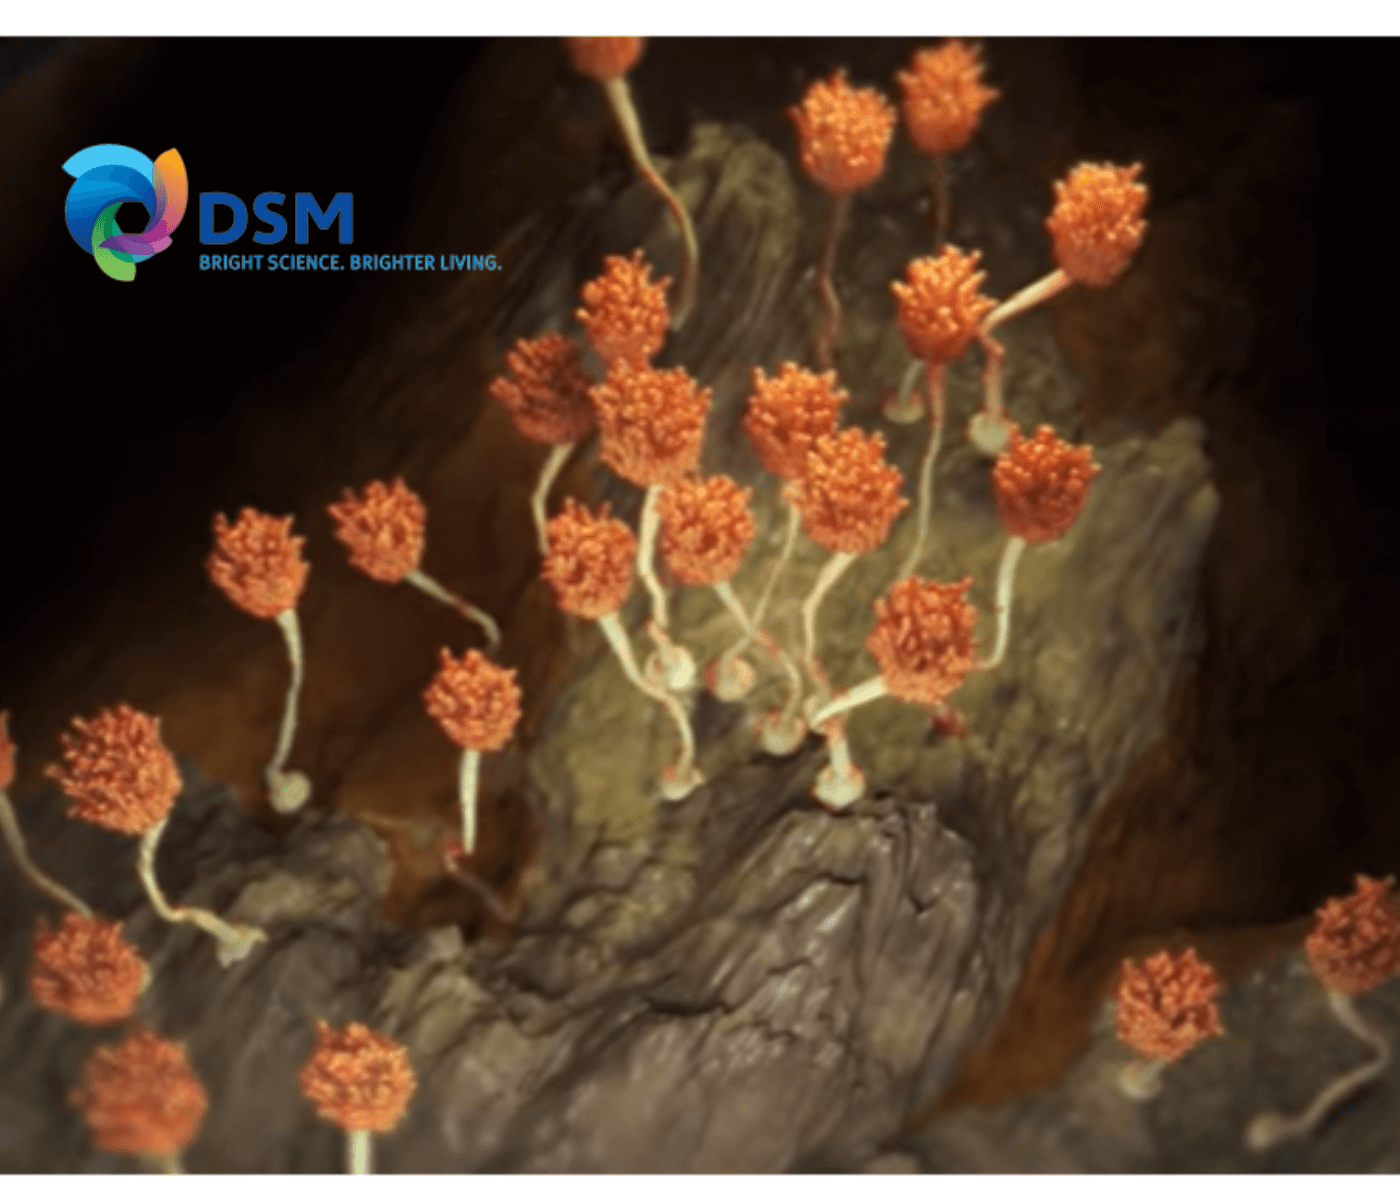 DSM comemora lançamento do Mycofix 5.0 na América Latina